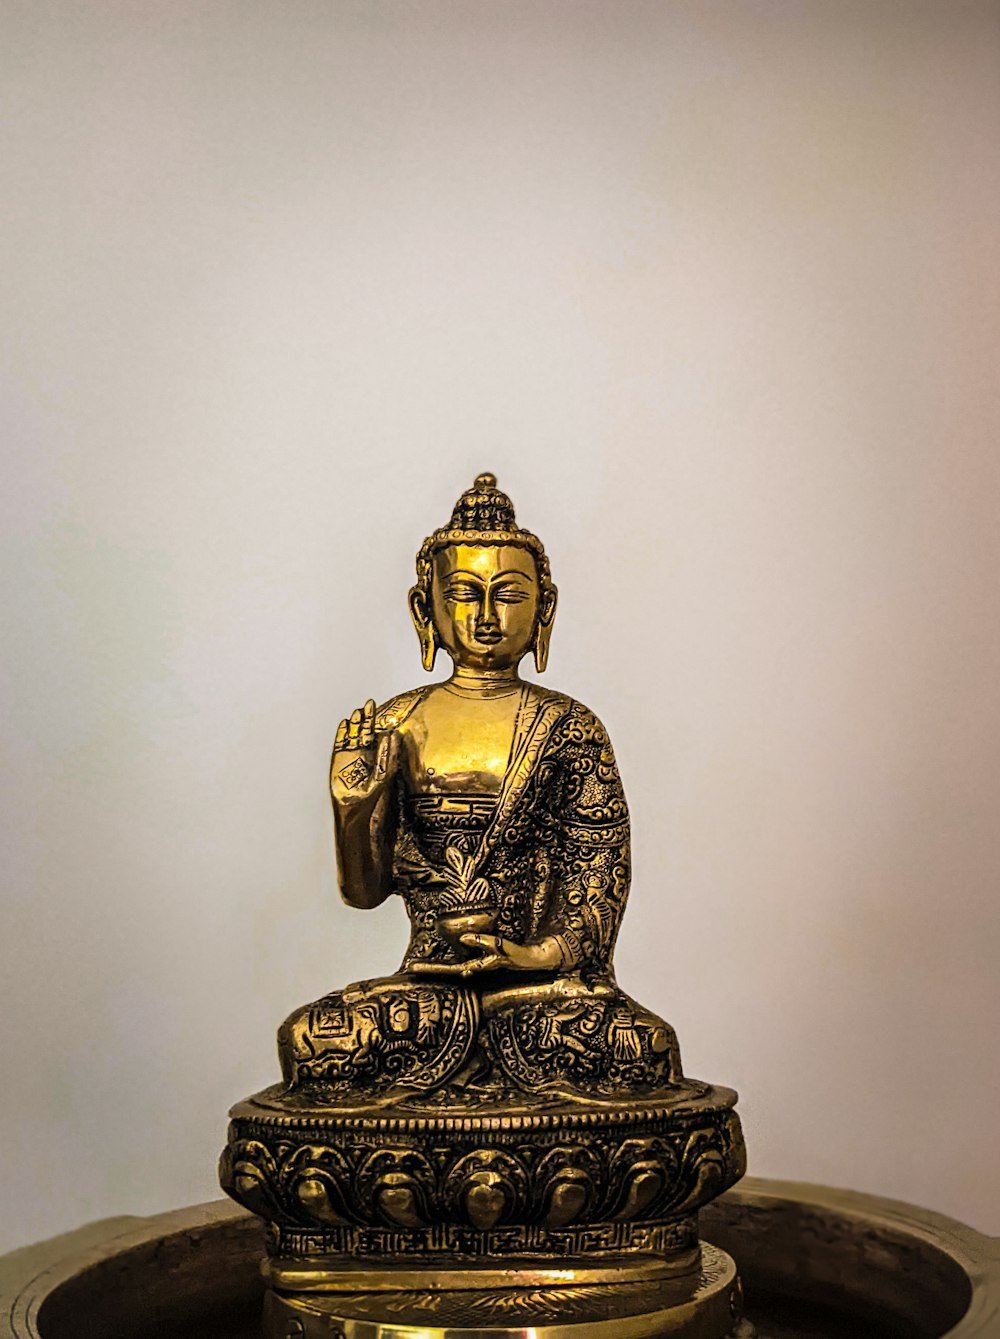 a golden buddha statue